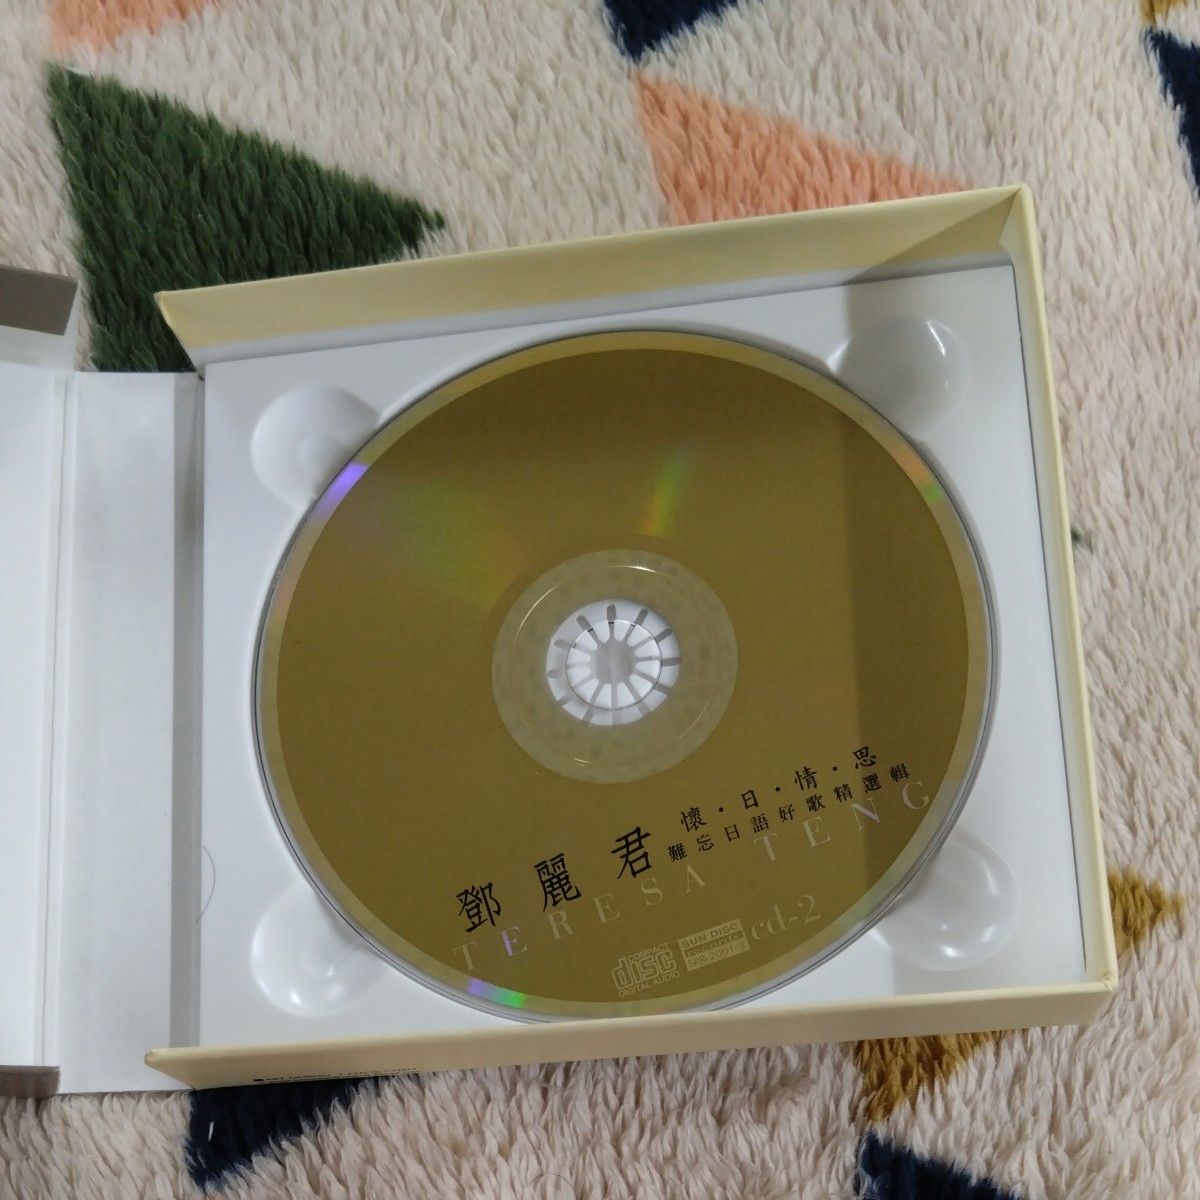 テレサ・テン 鄧麗君 TERESA TENG　「懐・日・情・思」CD2枚組ベスト